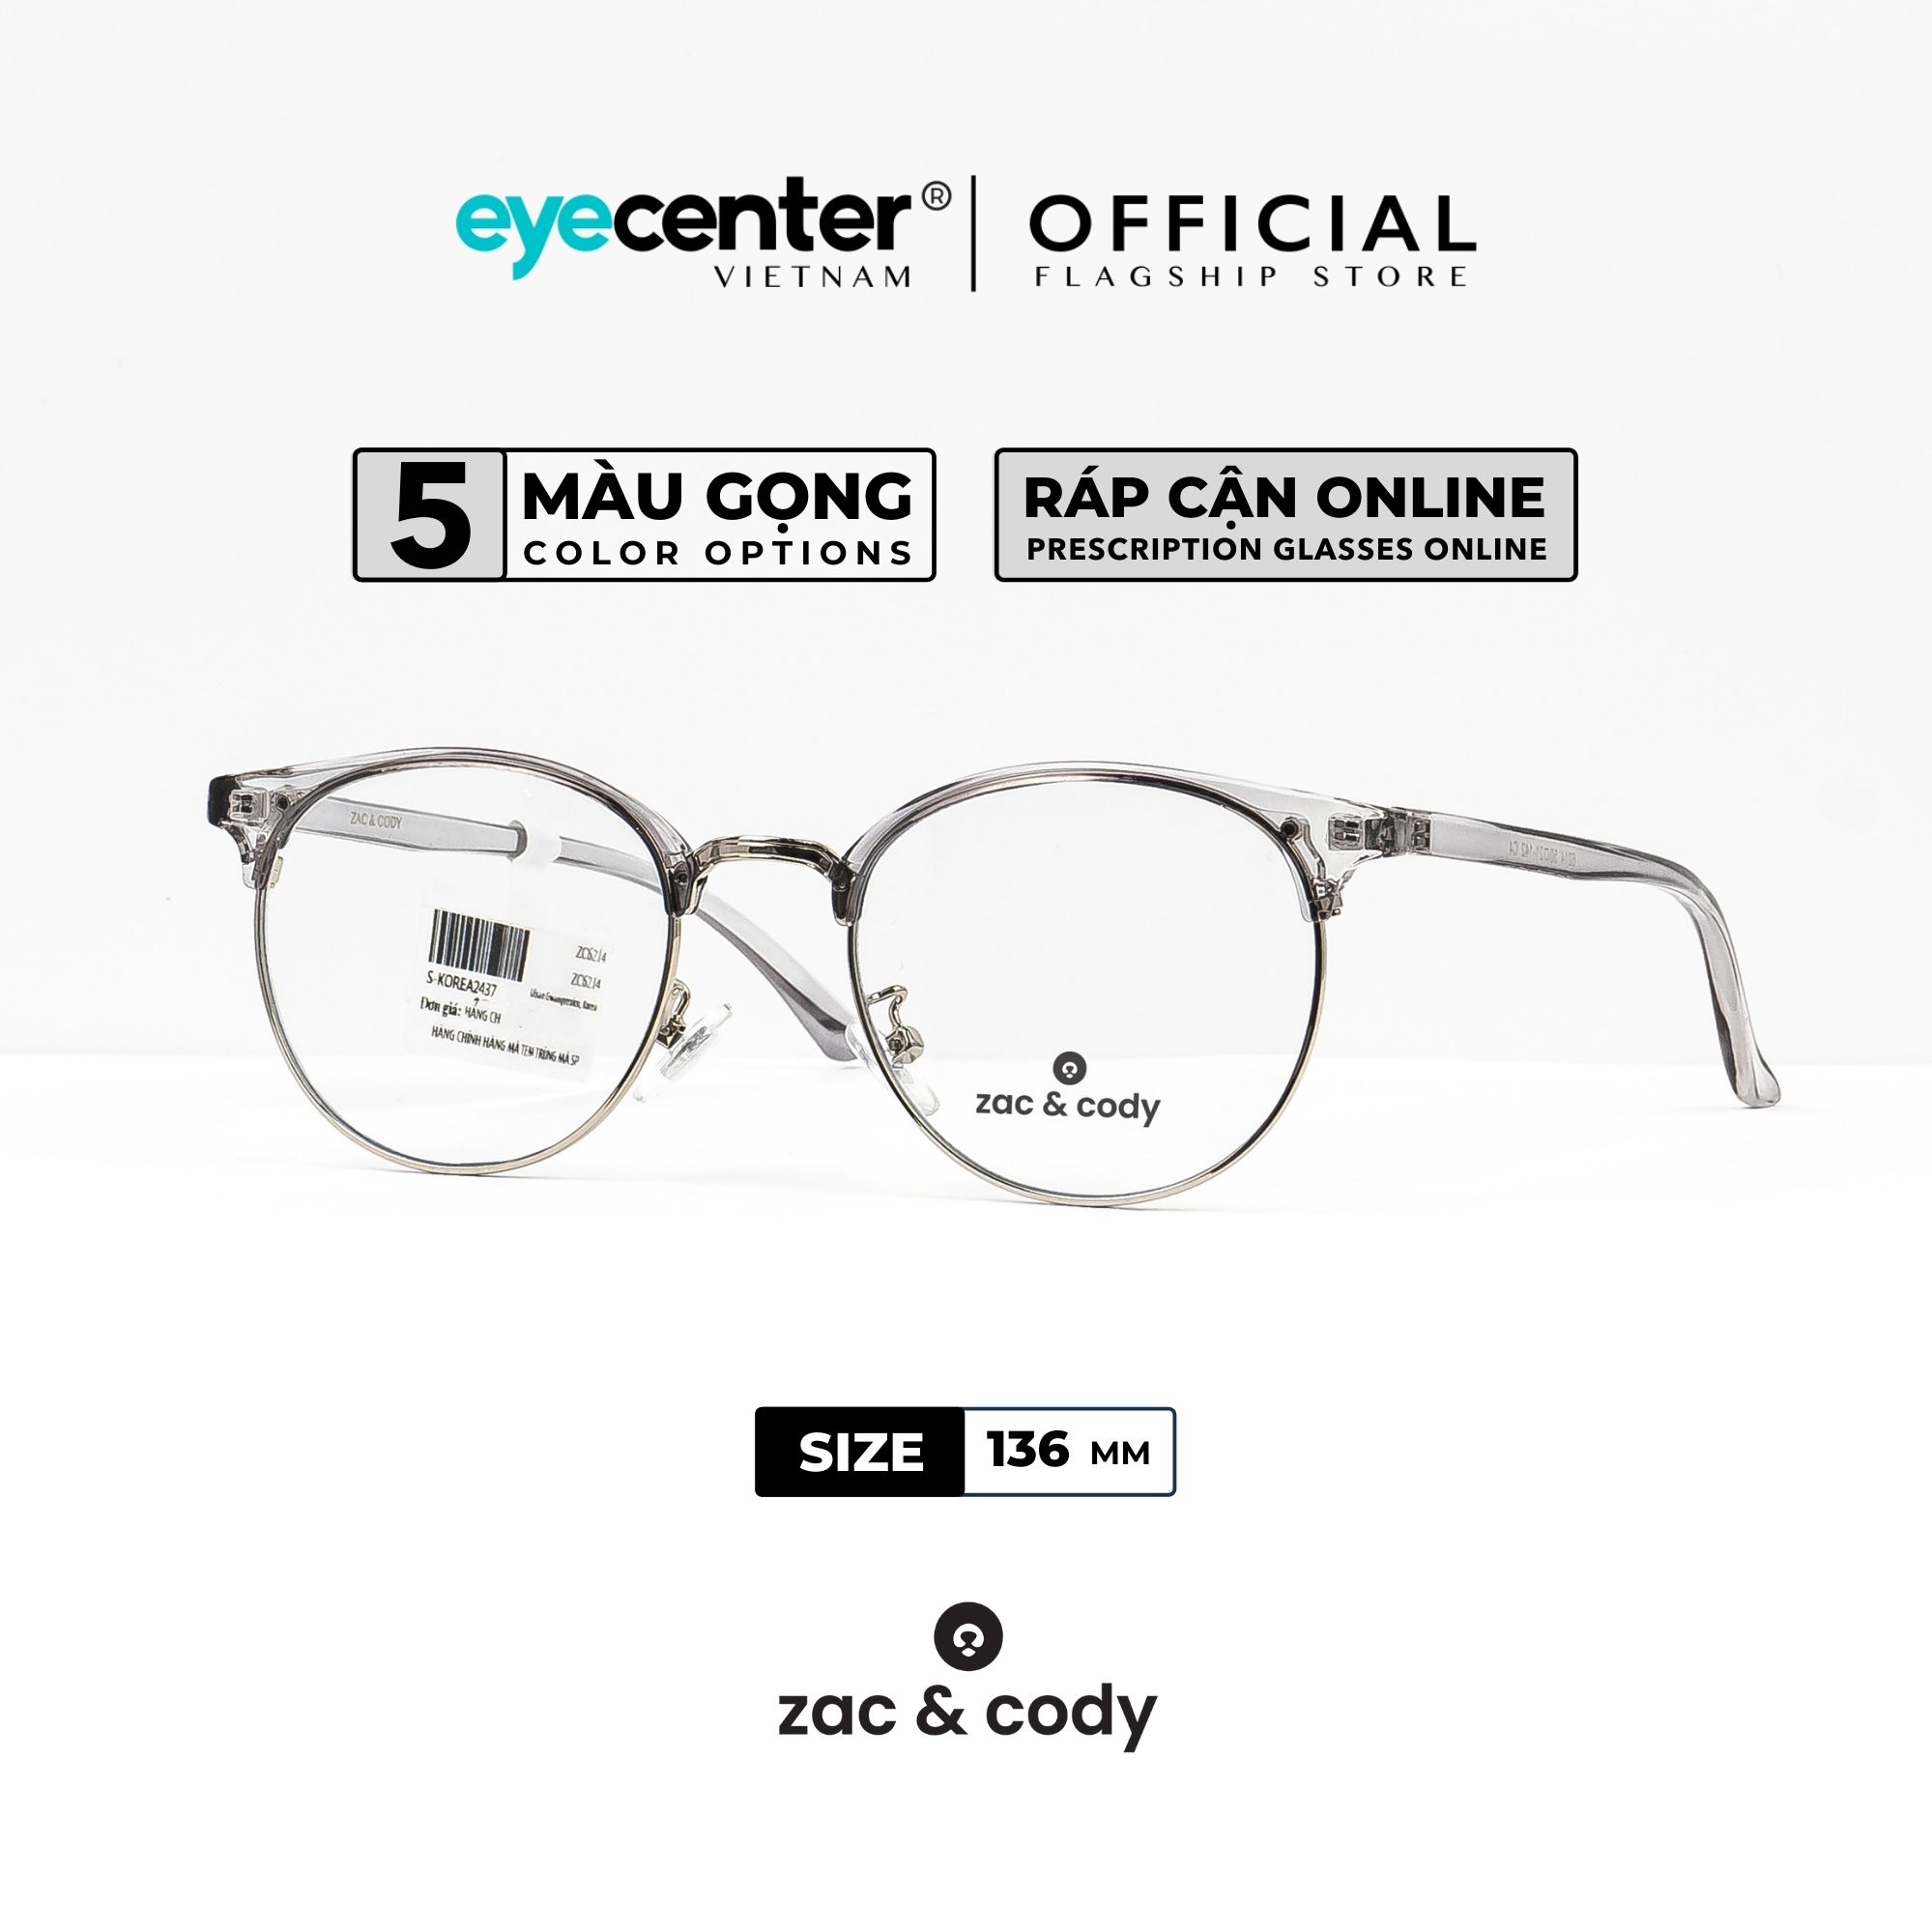 Gọng kính cận nam nữ chính hãng ZAC & CODY C35 nhựa dẻo siêu nhẹ chống gãy nhập khẩu by Eye Center Vietnam